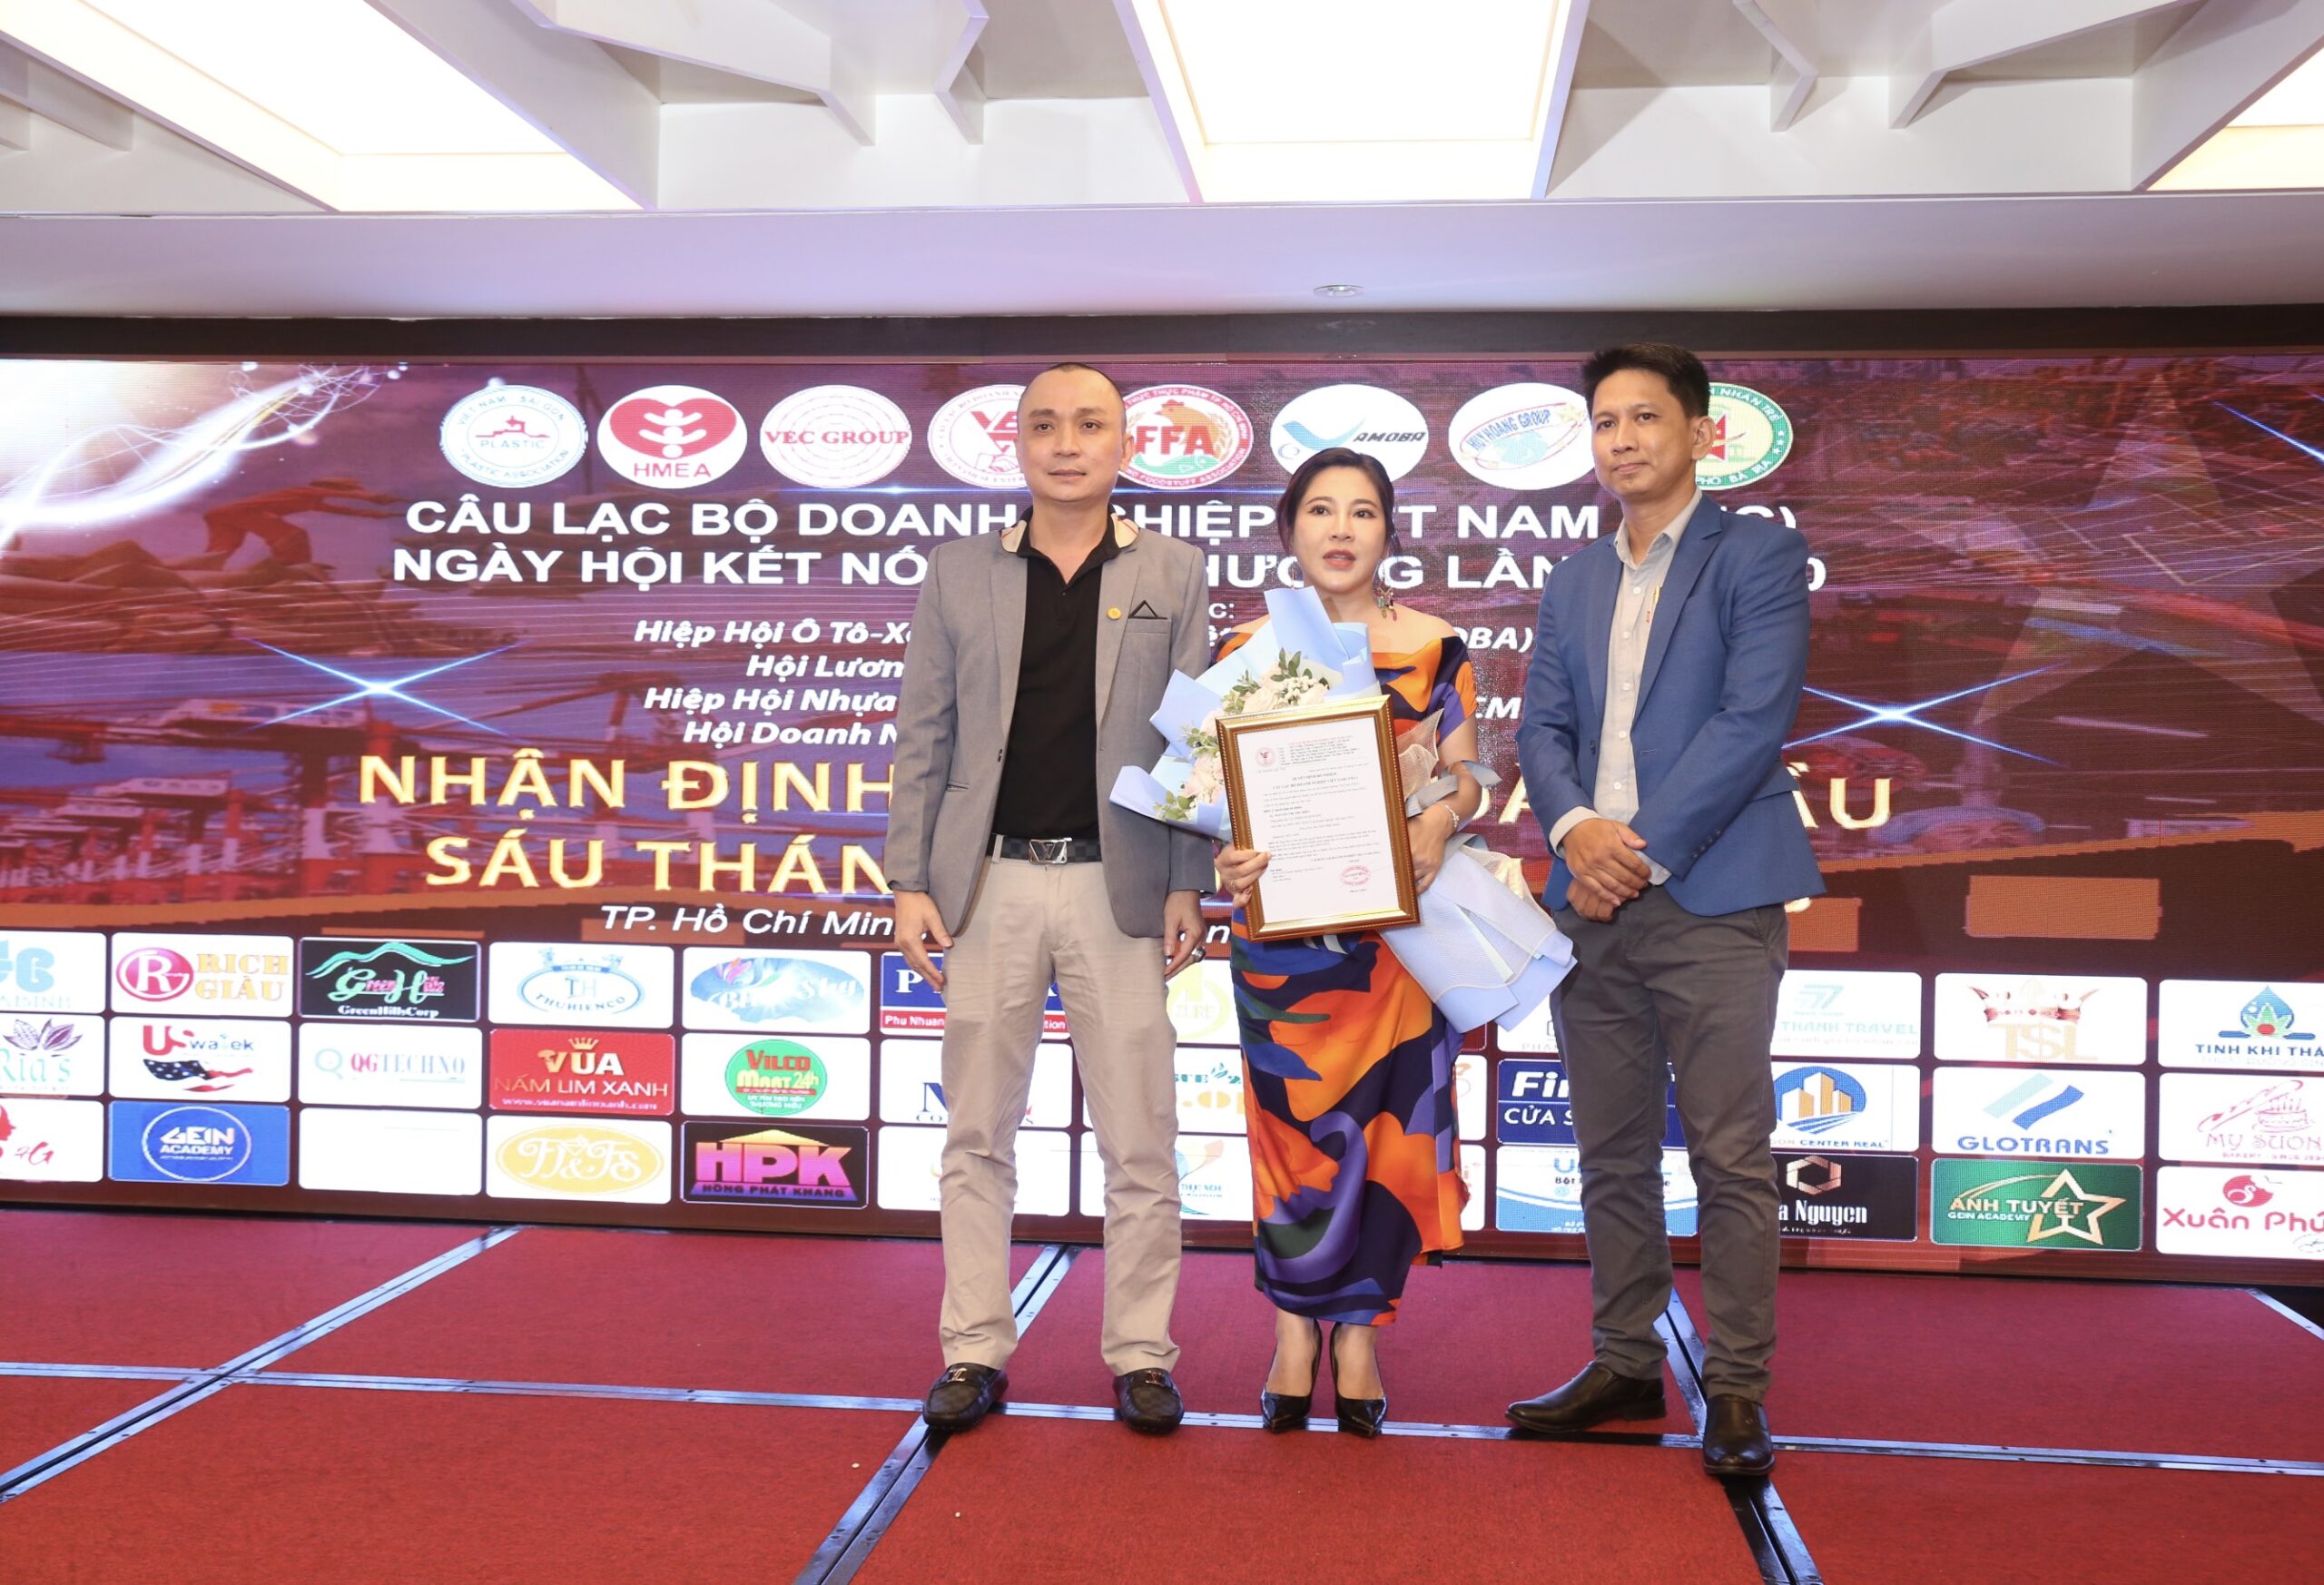 Bà Nguyễn Thị Thu Hiền - Tổng giám đốc công ty TH Newlife được bổ nhiệm làm Phó Chủ tịch phụ trách ban xuất nhập khẩu CLB Doanh nghiệp Việt Nam